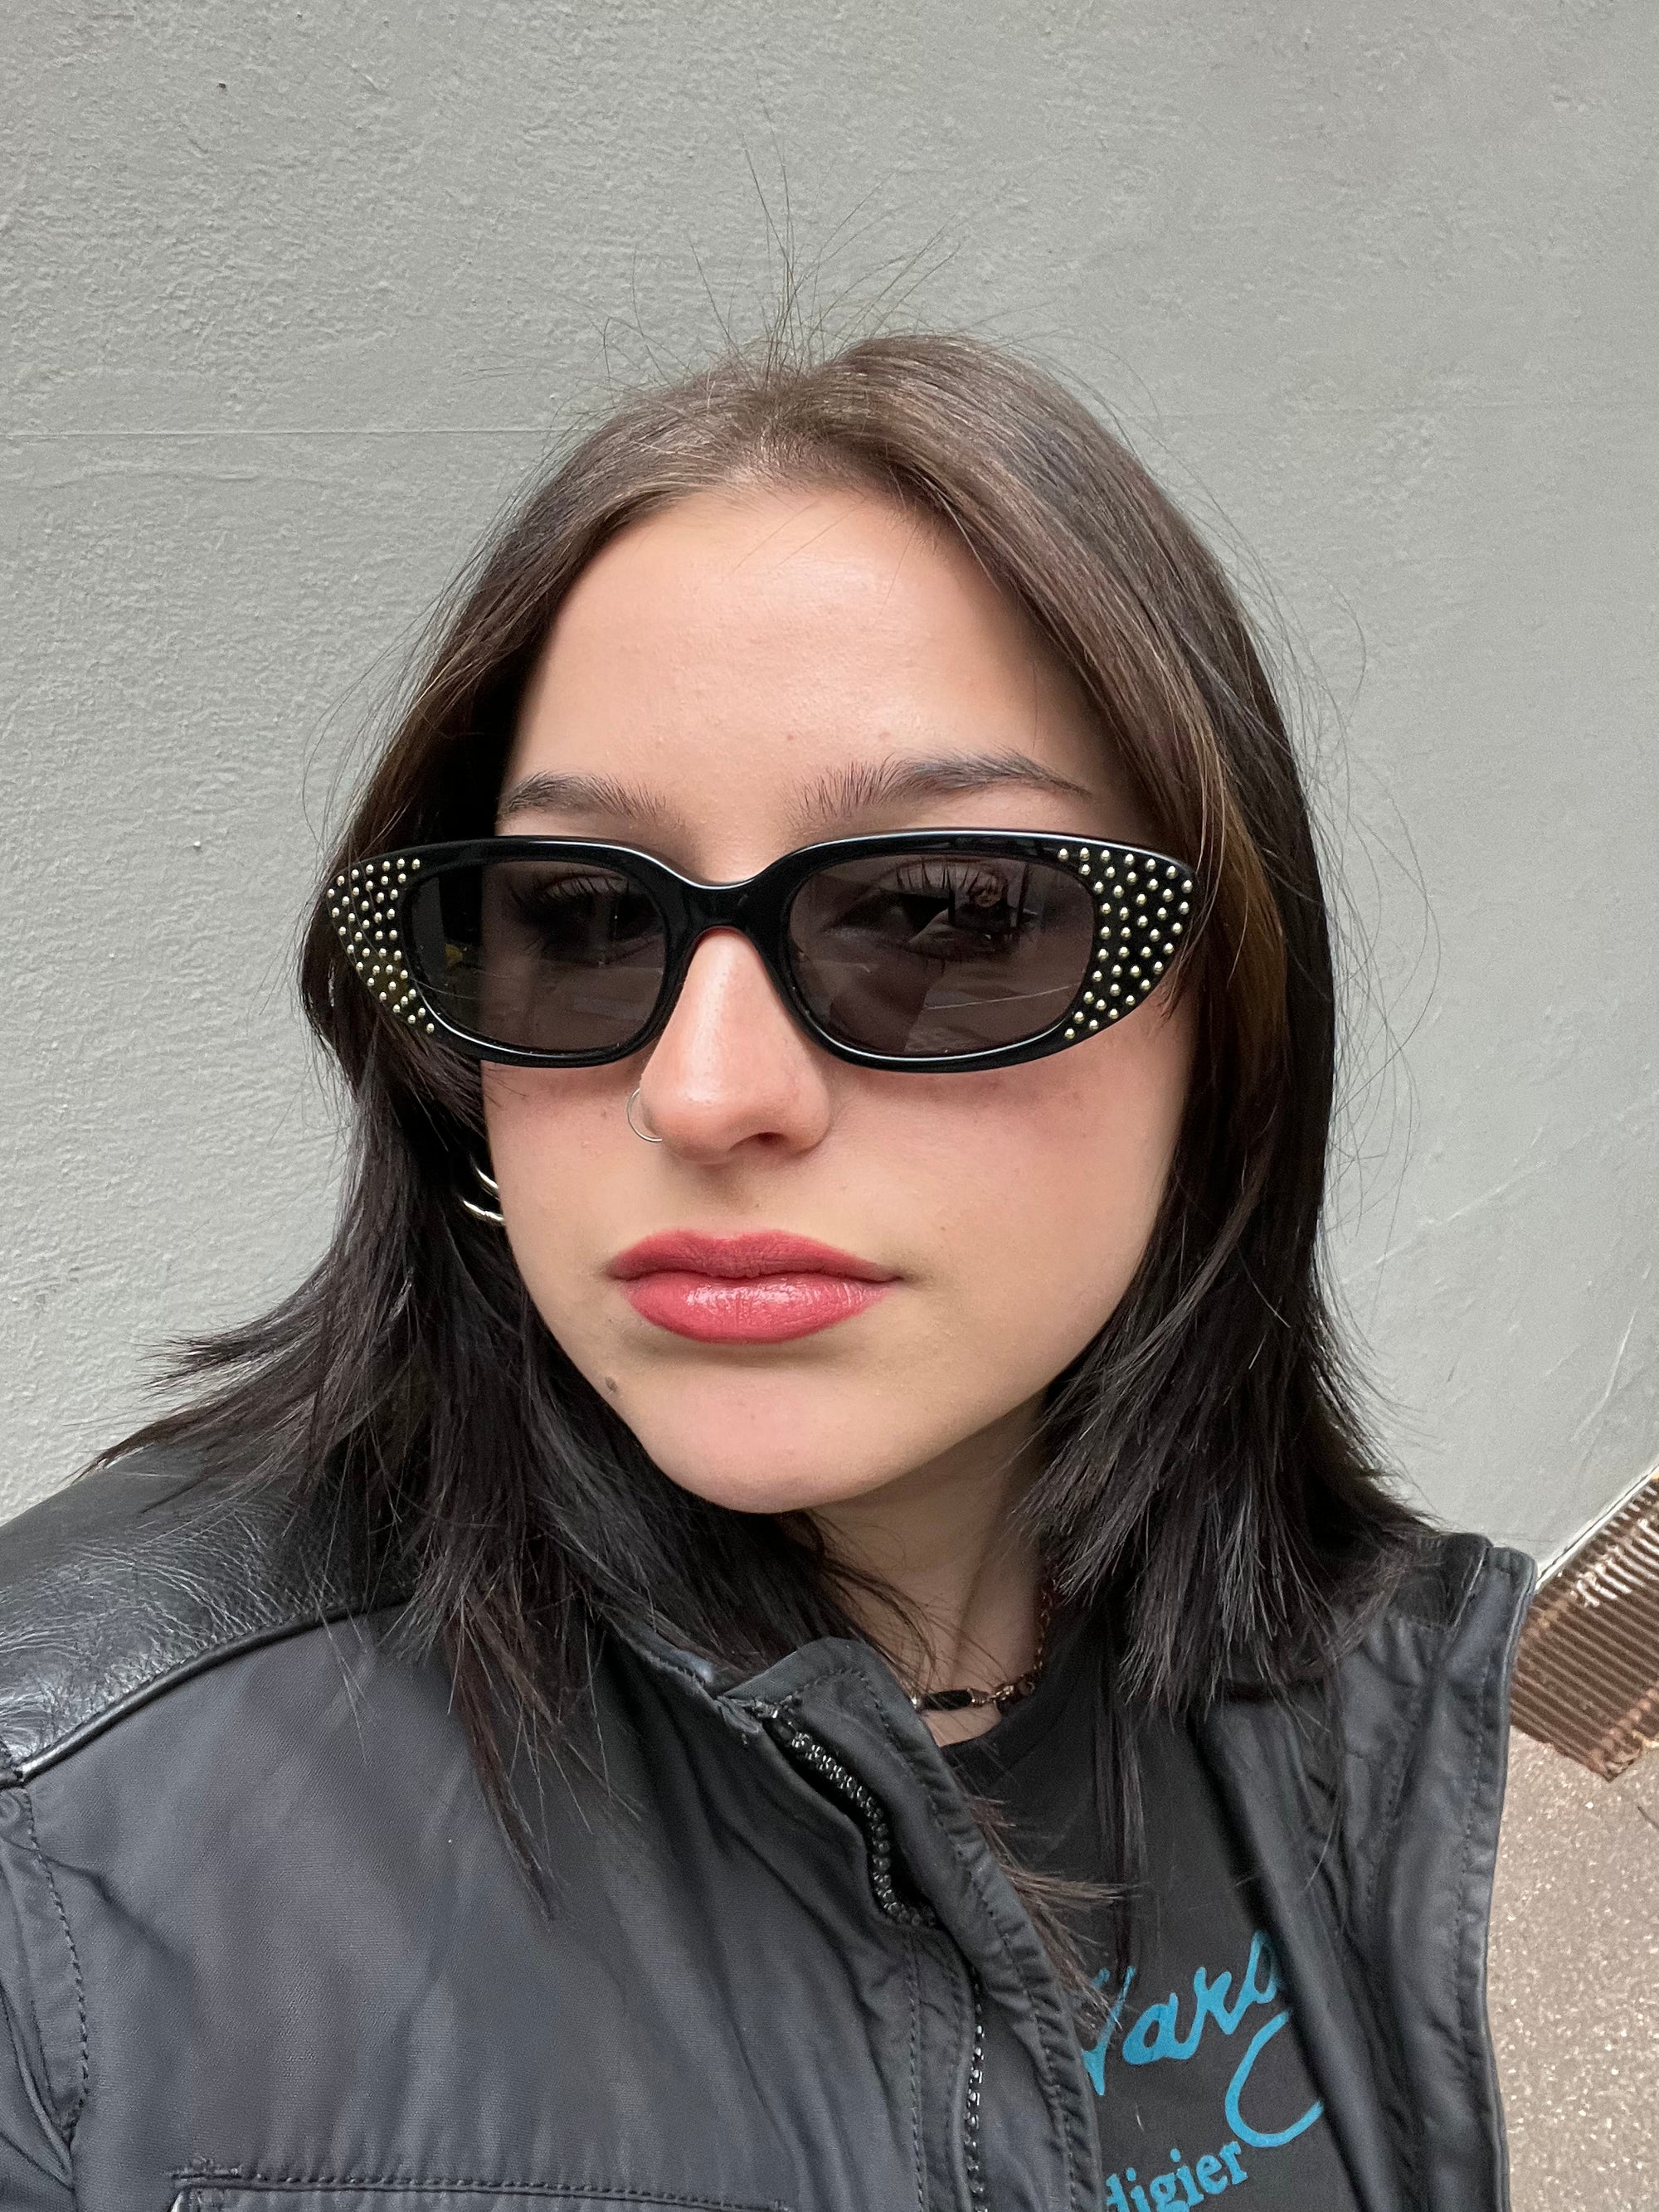 Vintage Celine Paris Sunglasses Black